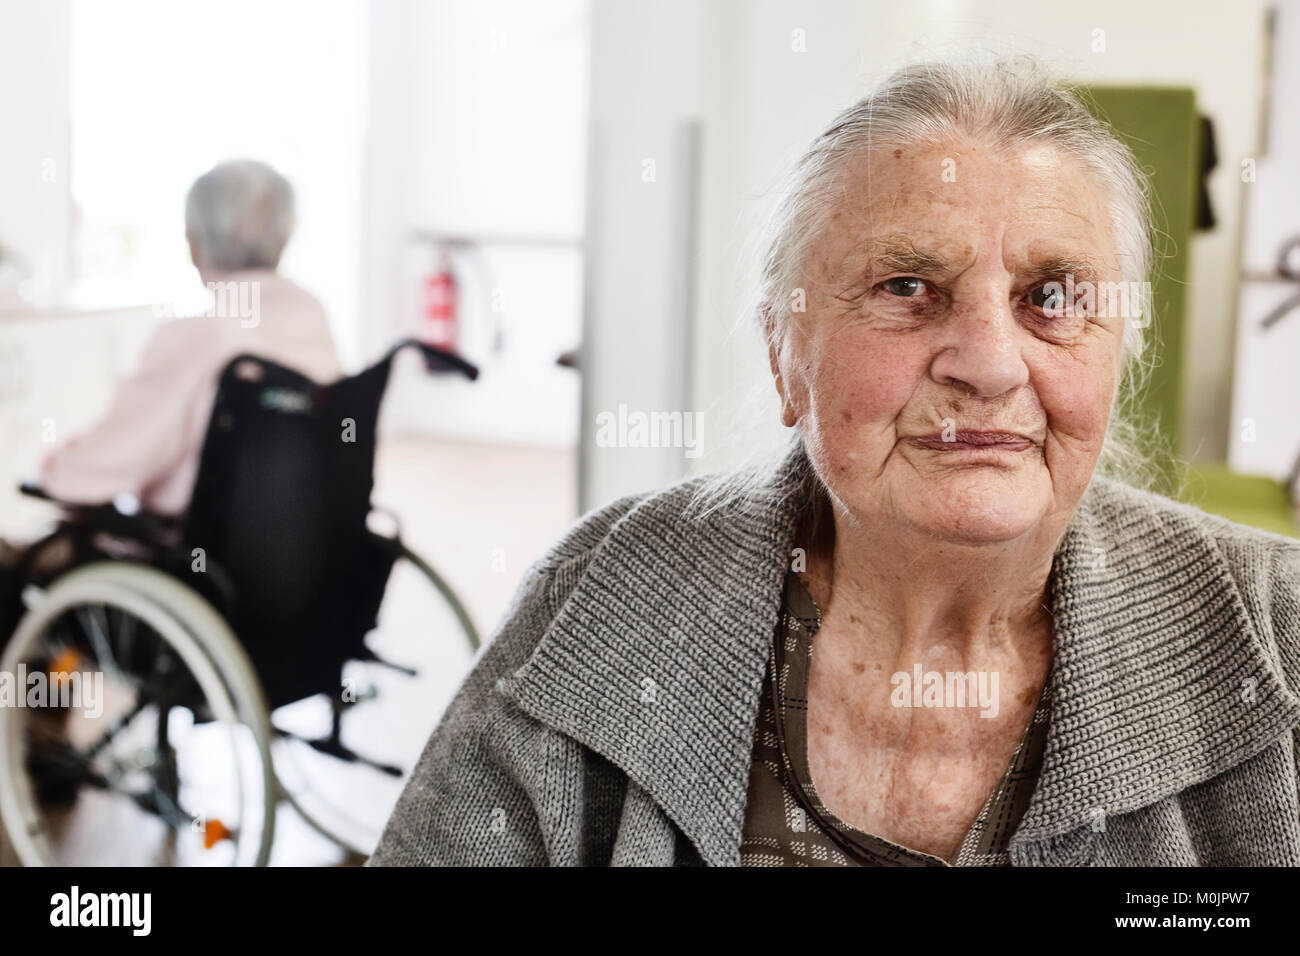 Senior déments, Portrait, dans une maison de retraite, Allemagne Banque D'Images